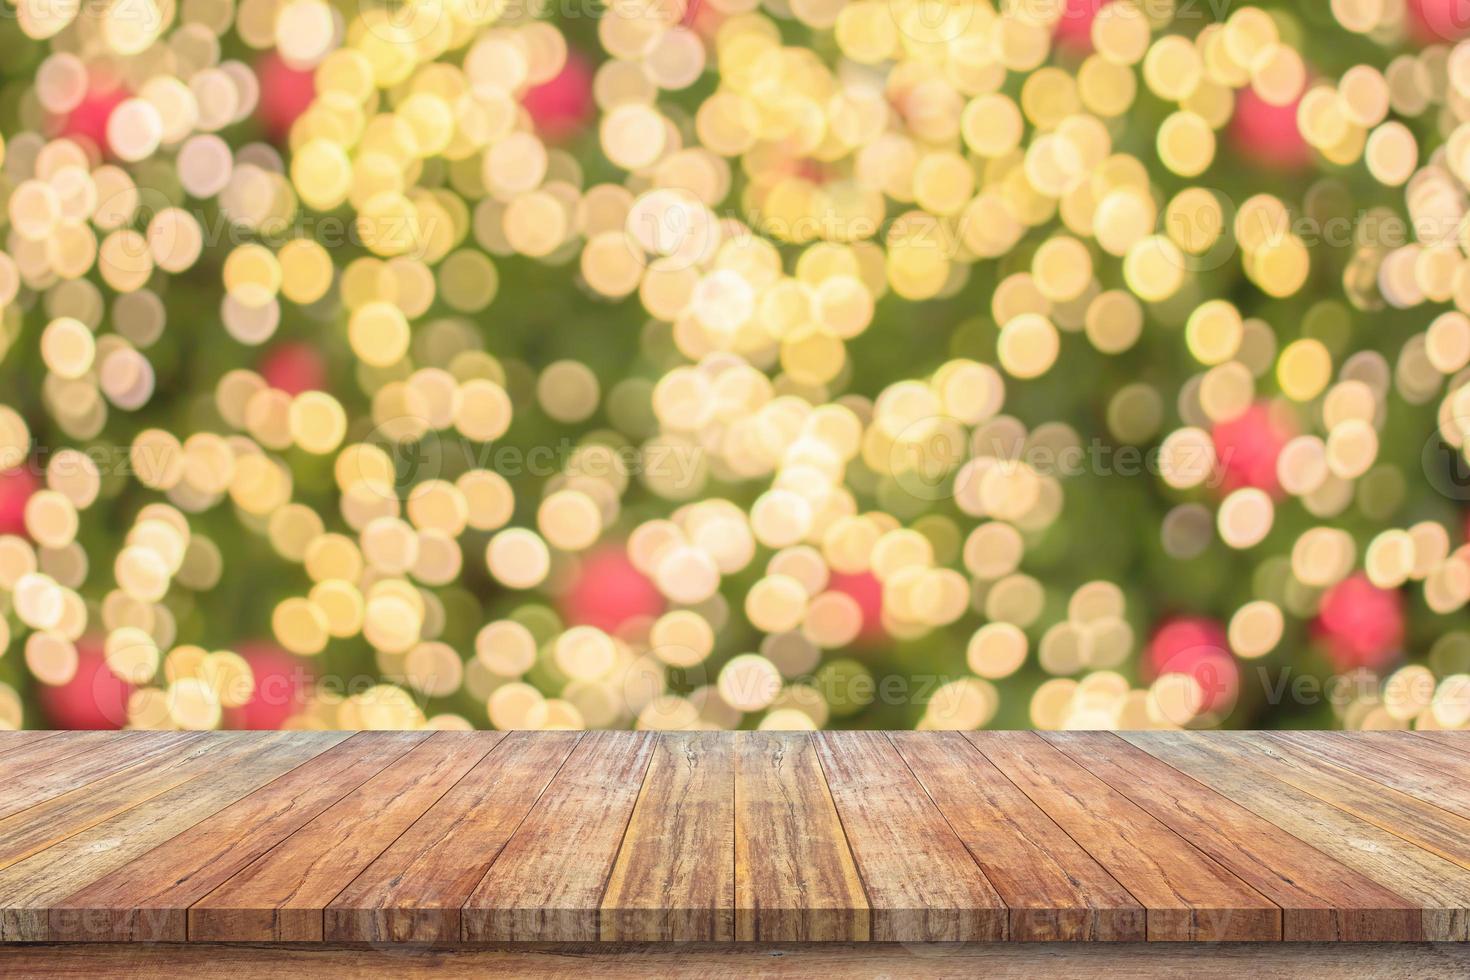 leeg hout tafel top met vervagen Kerstmis boom met bokeh licht achtergrond foto